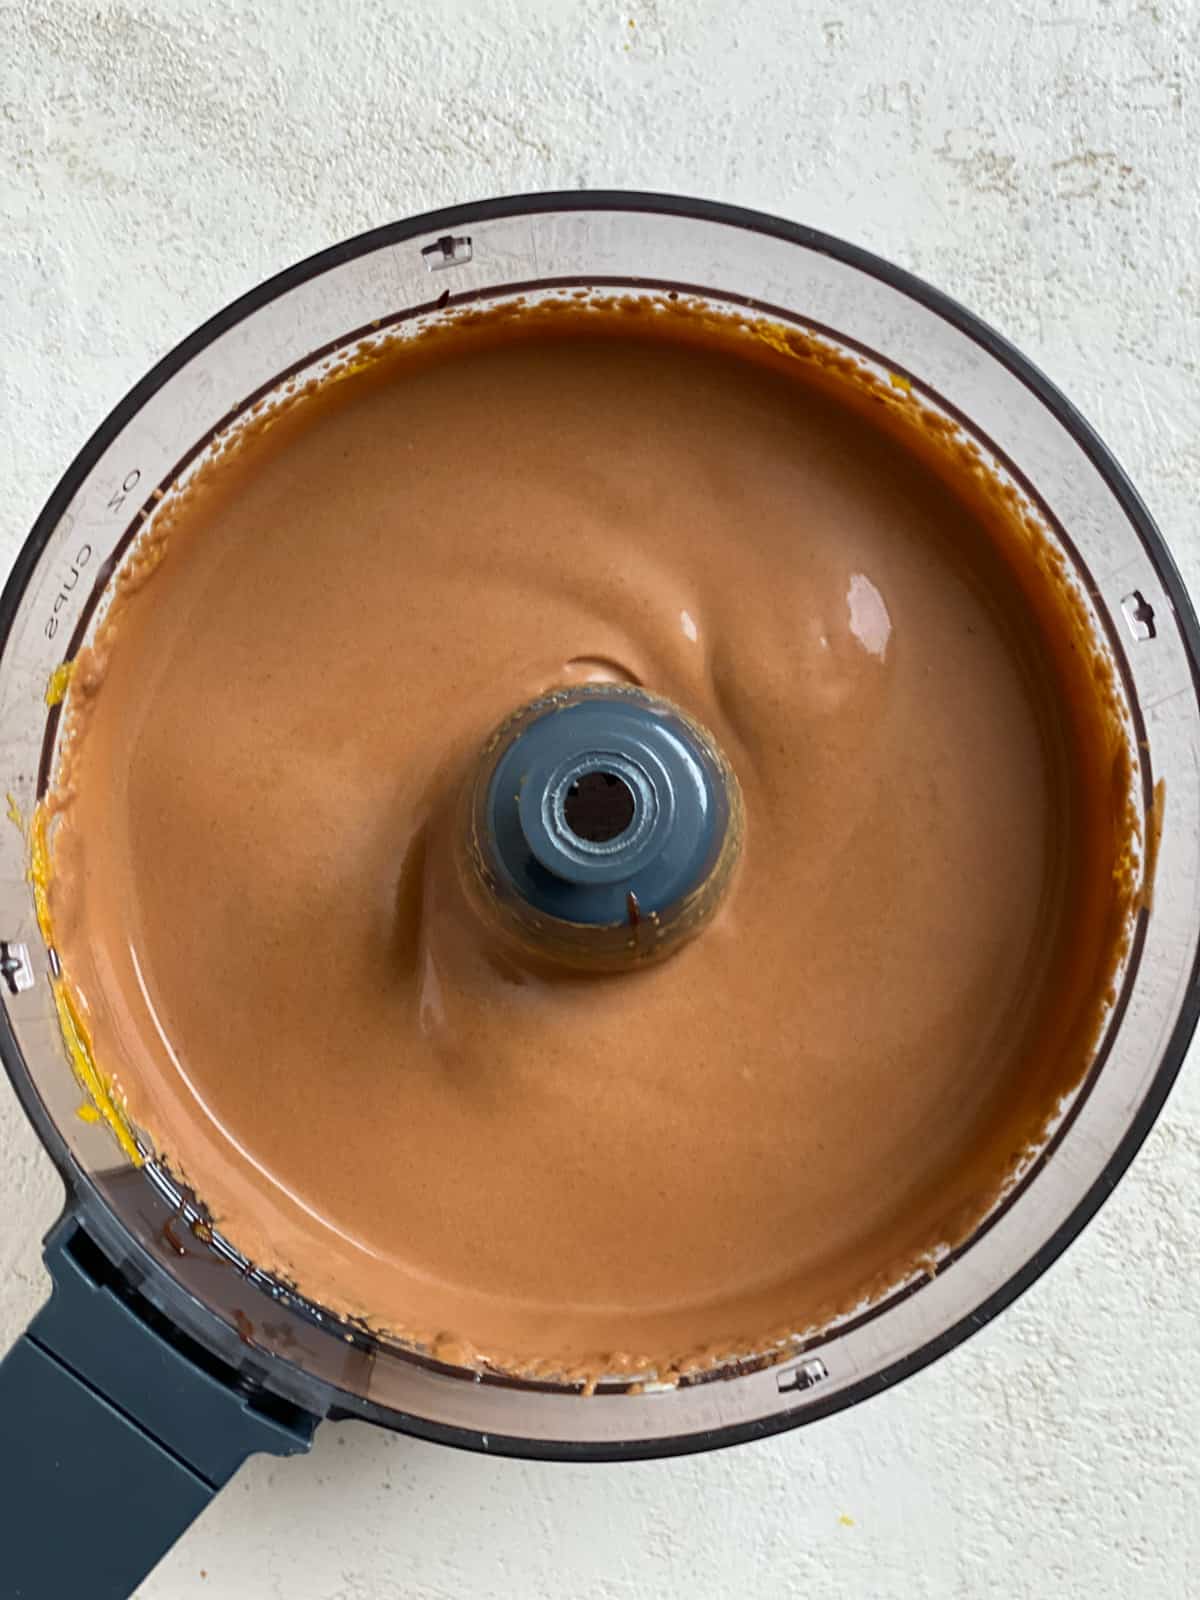 post blending of ingredients for Chocolate Pumpkin Pie in a blender